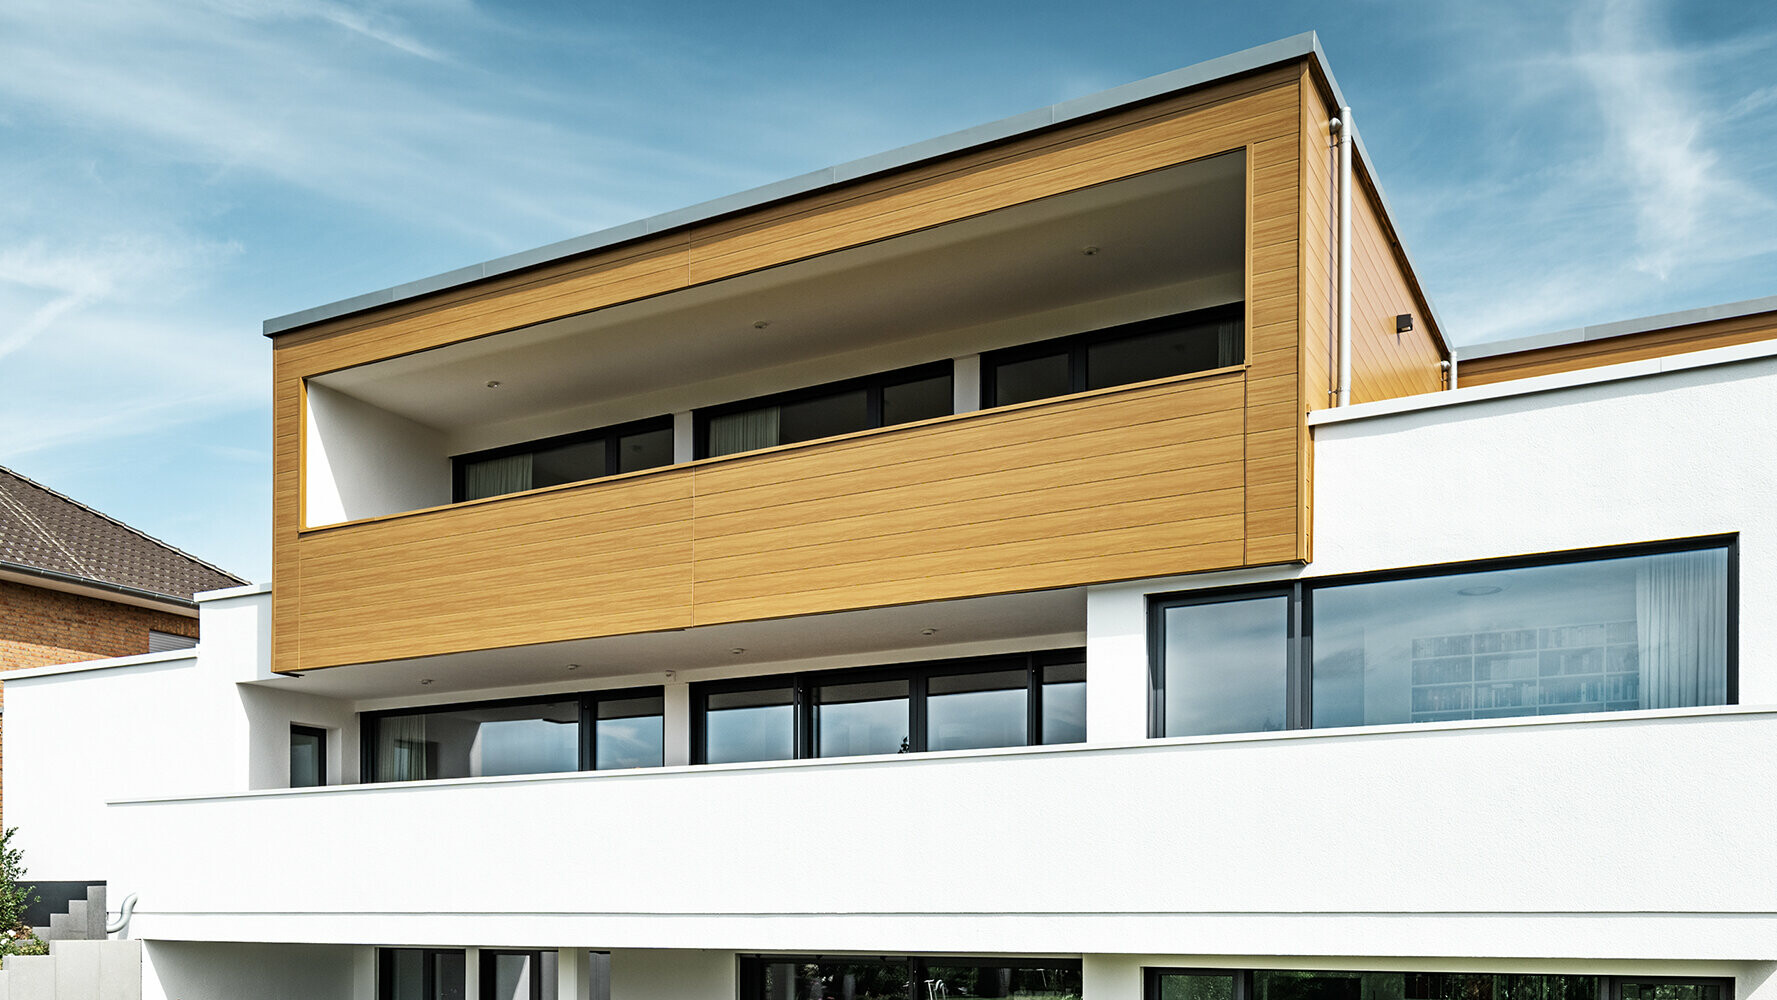 Moderná obytná budova s balkónom obloženým fasádnymi panelmi PREFA Siding v dubovo béžovosivej farbe.